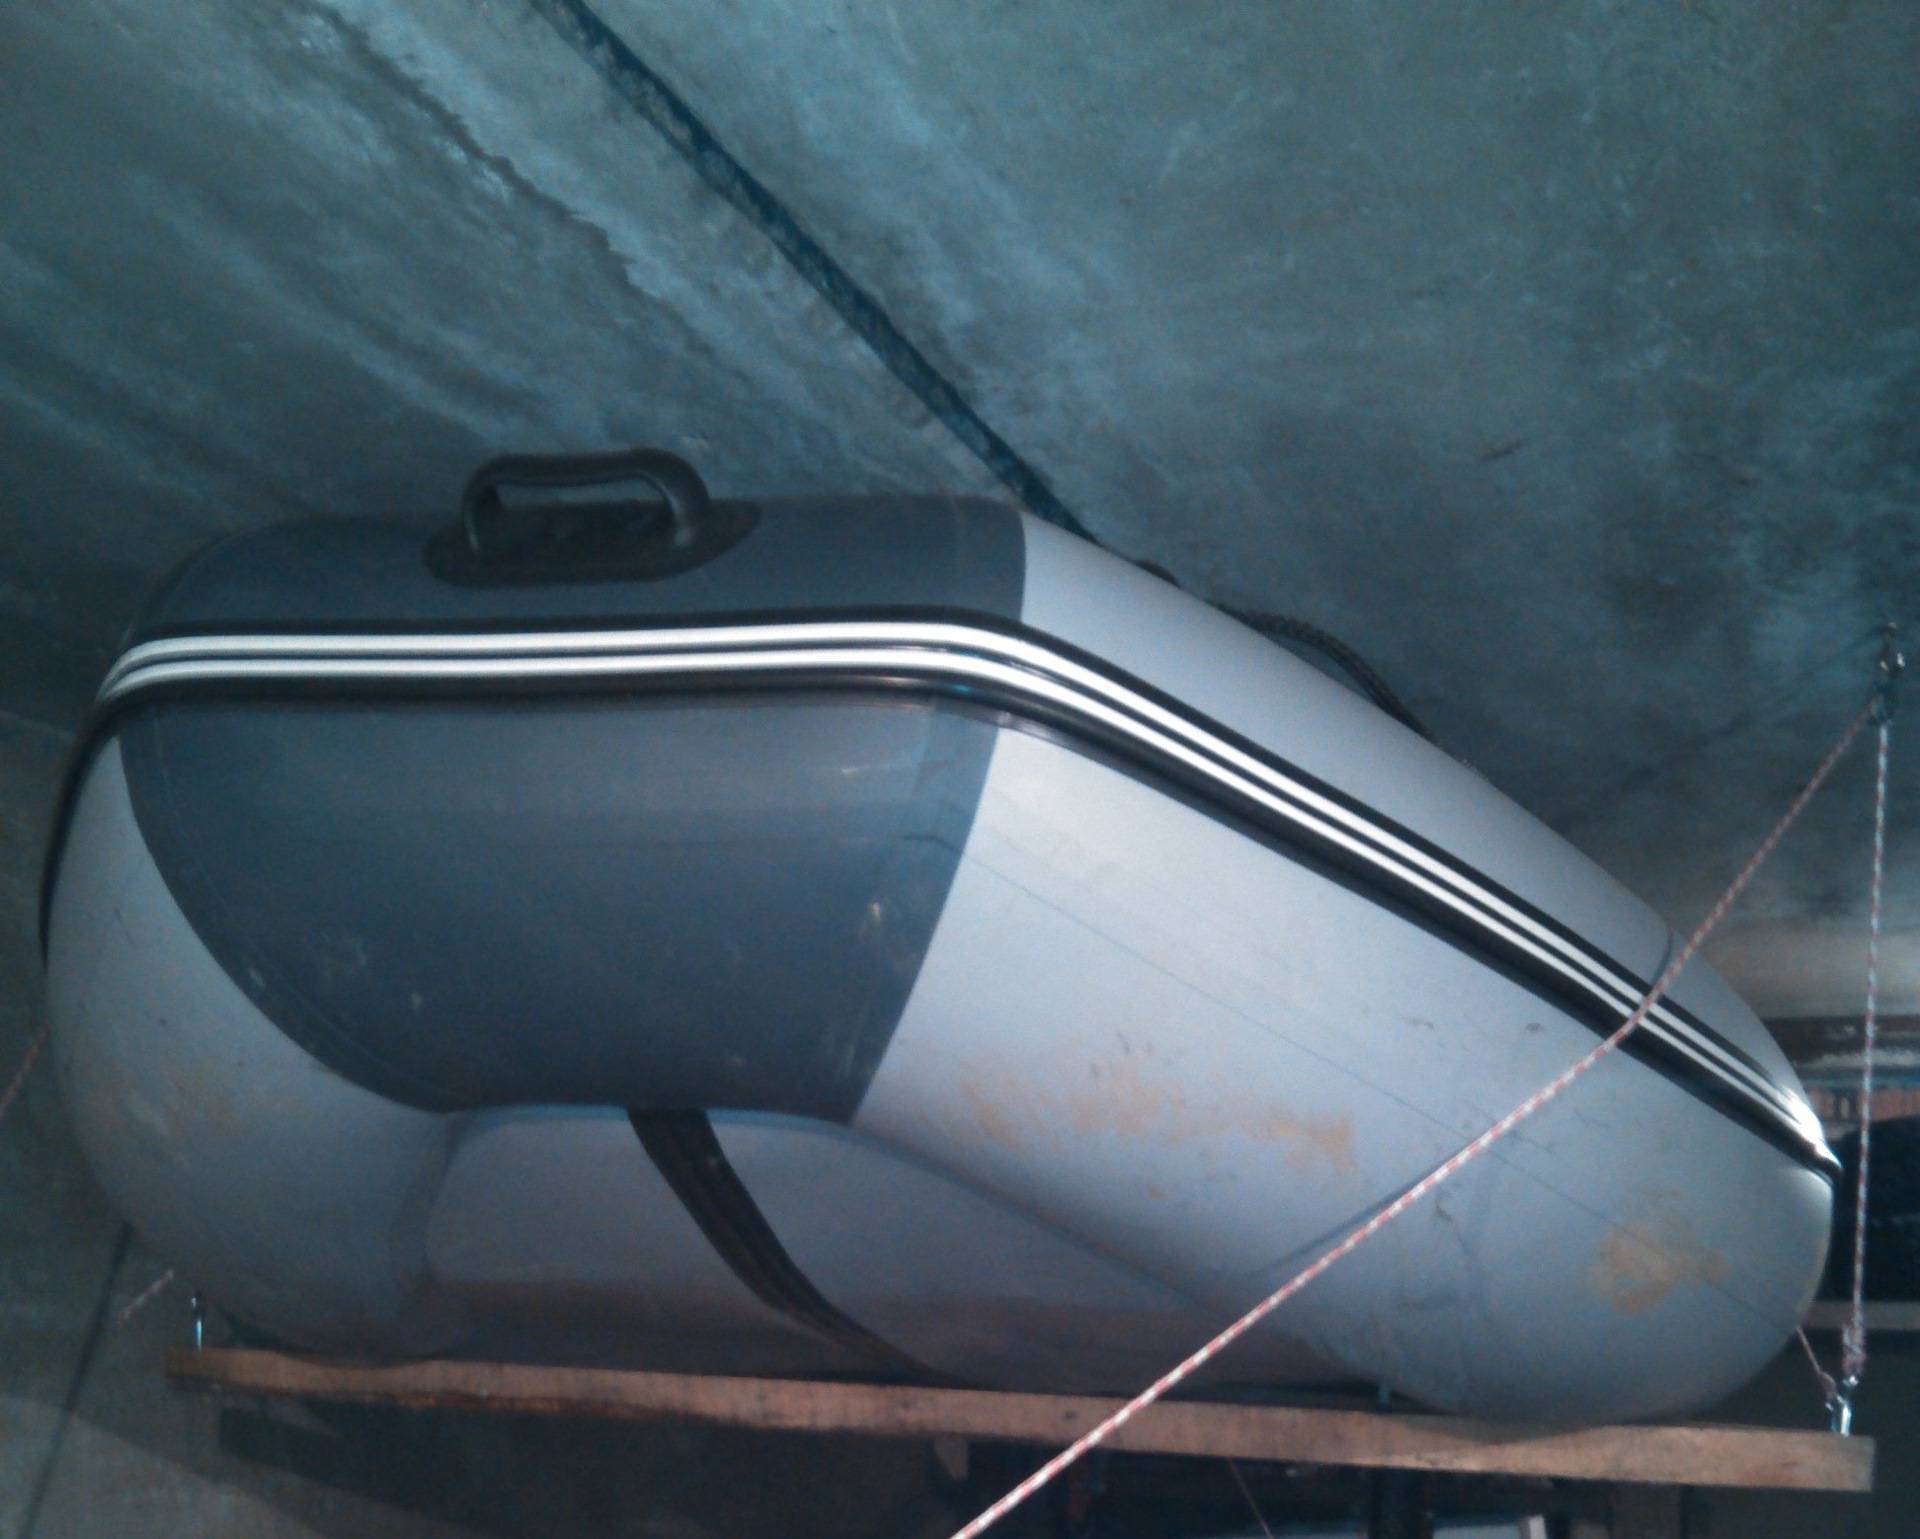 Хранение моторных лодок: пвх, резиновых, яхт в холодном гараже под потолком в зимний период